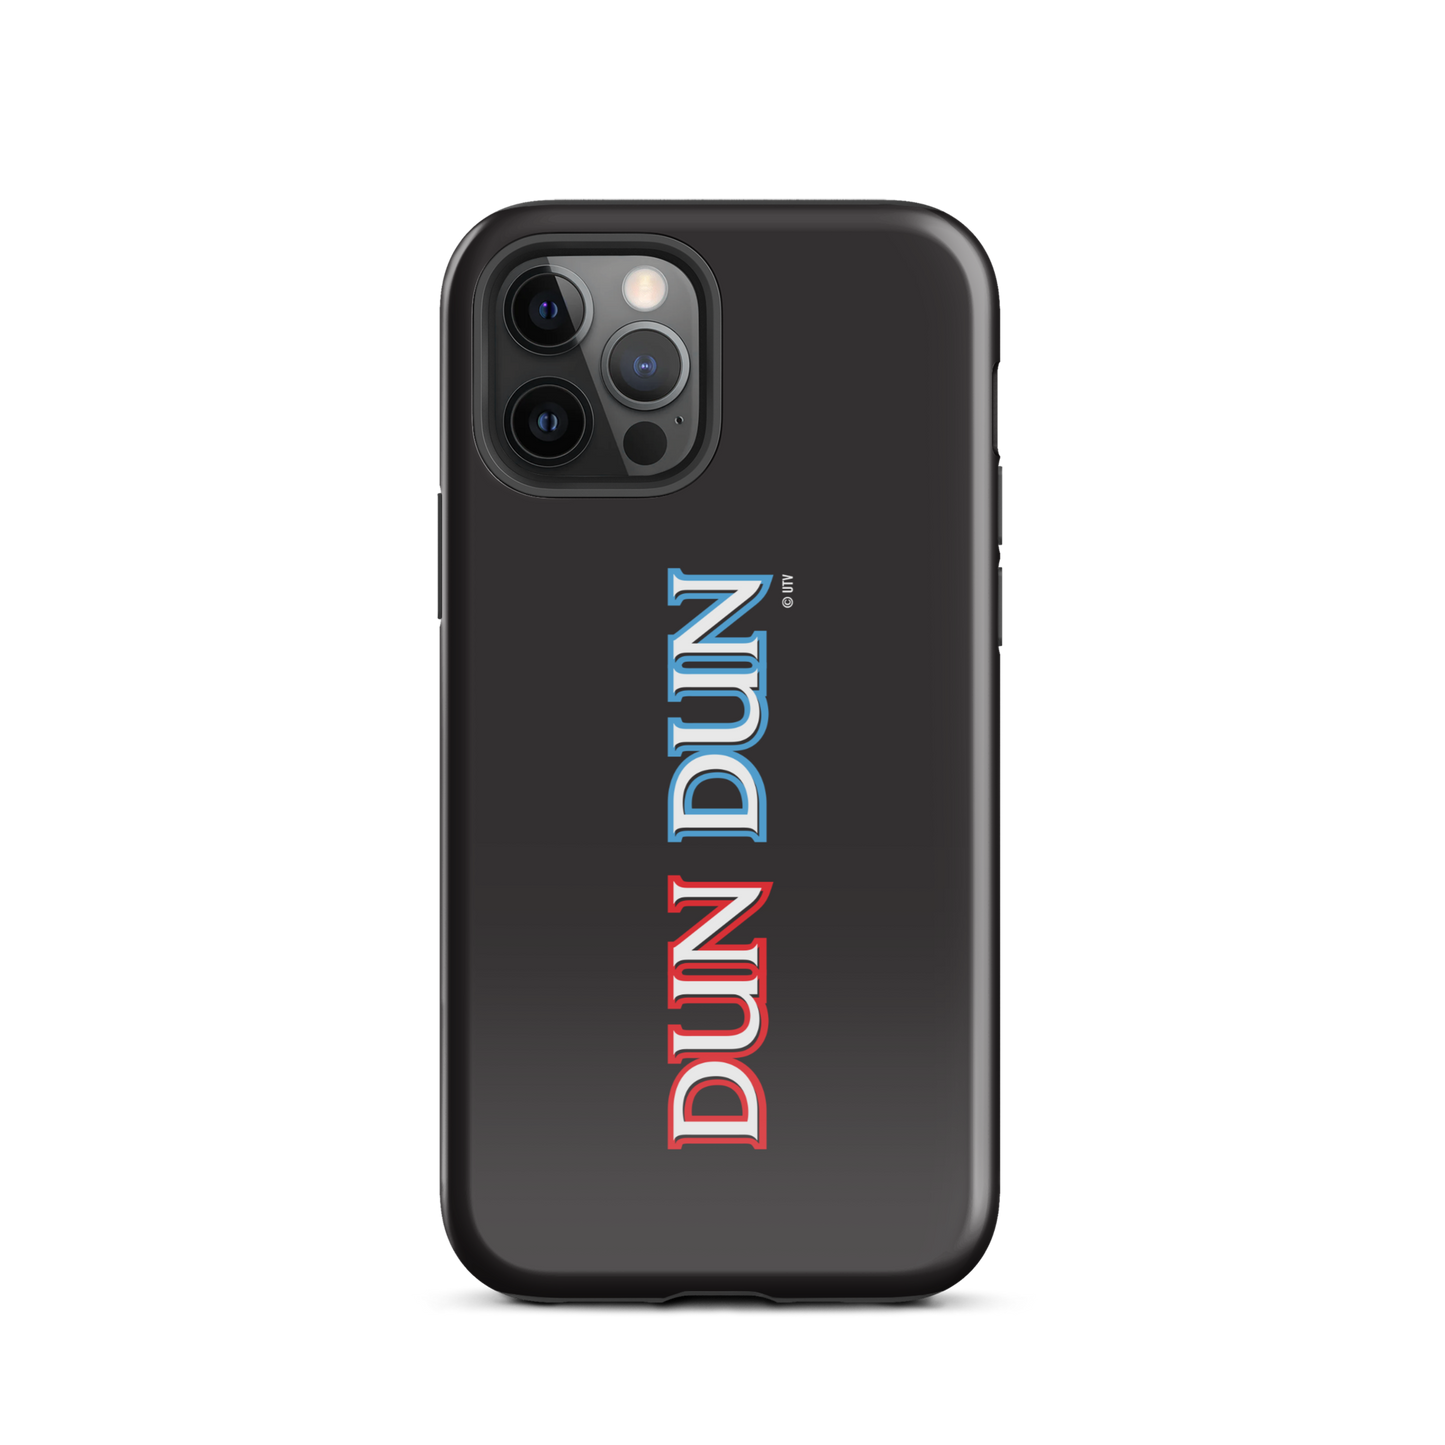 Law & Order: SVU Dun Dun Tough Phone Case - iPhone